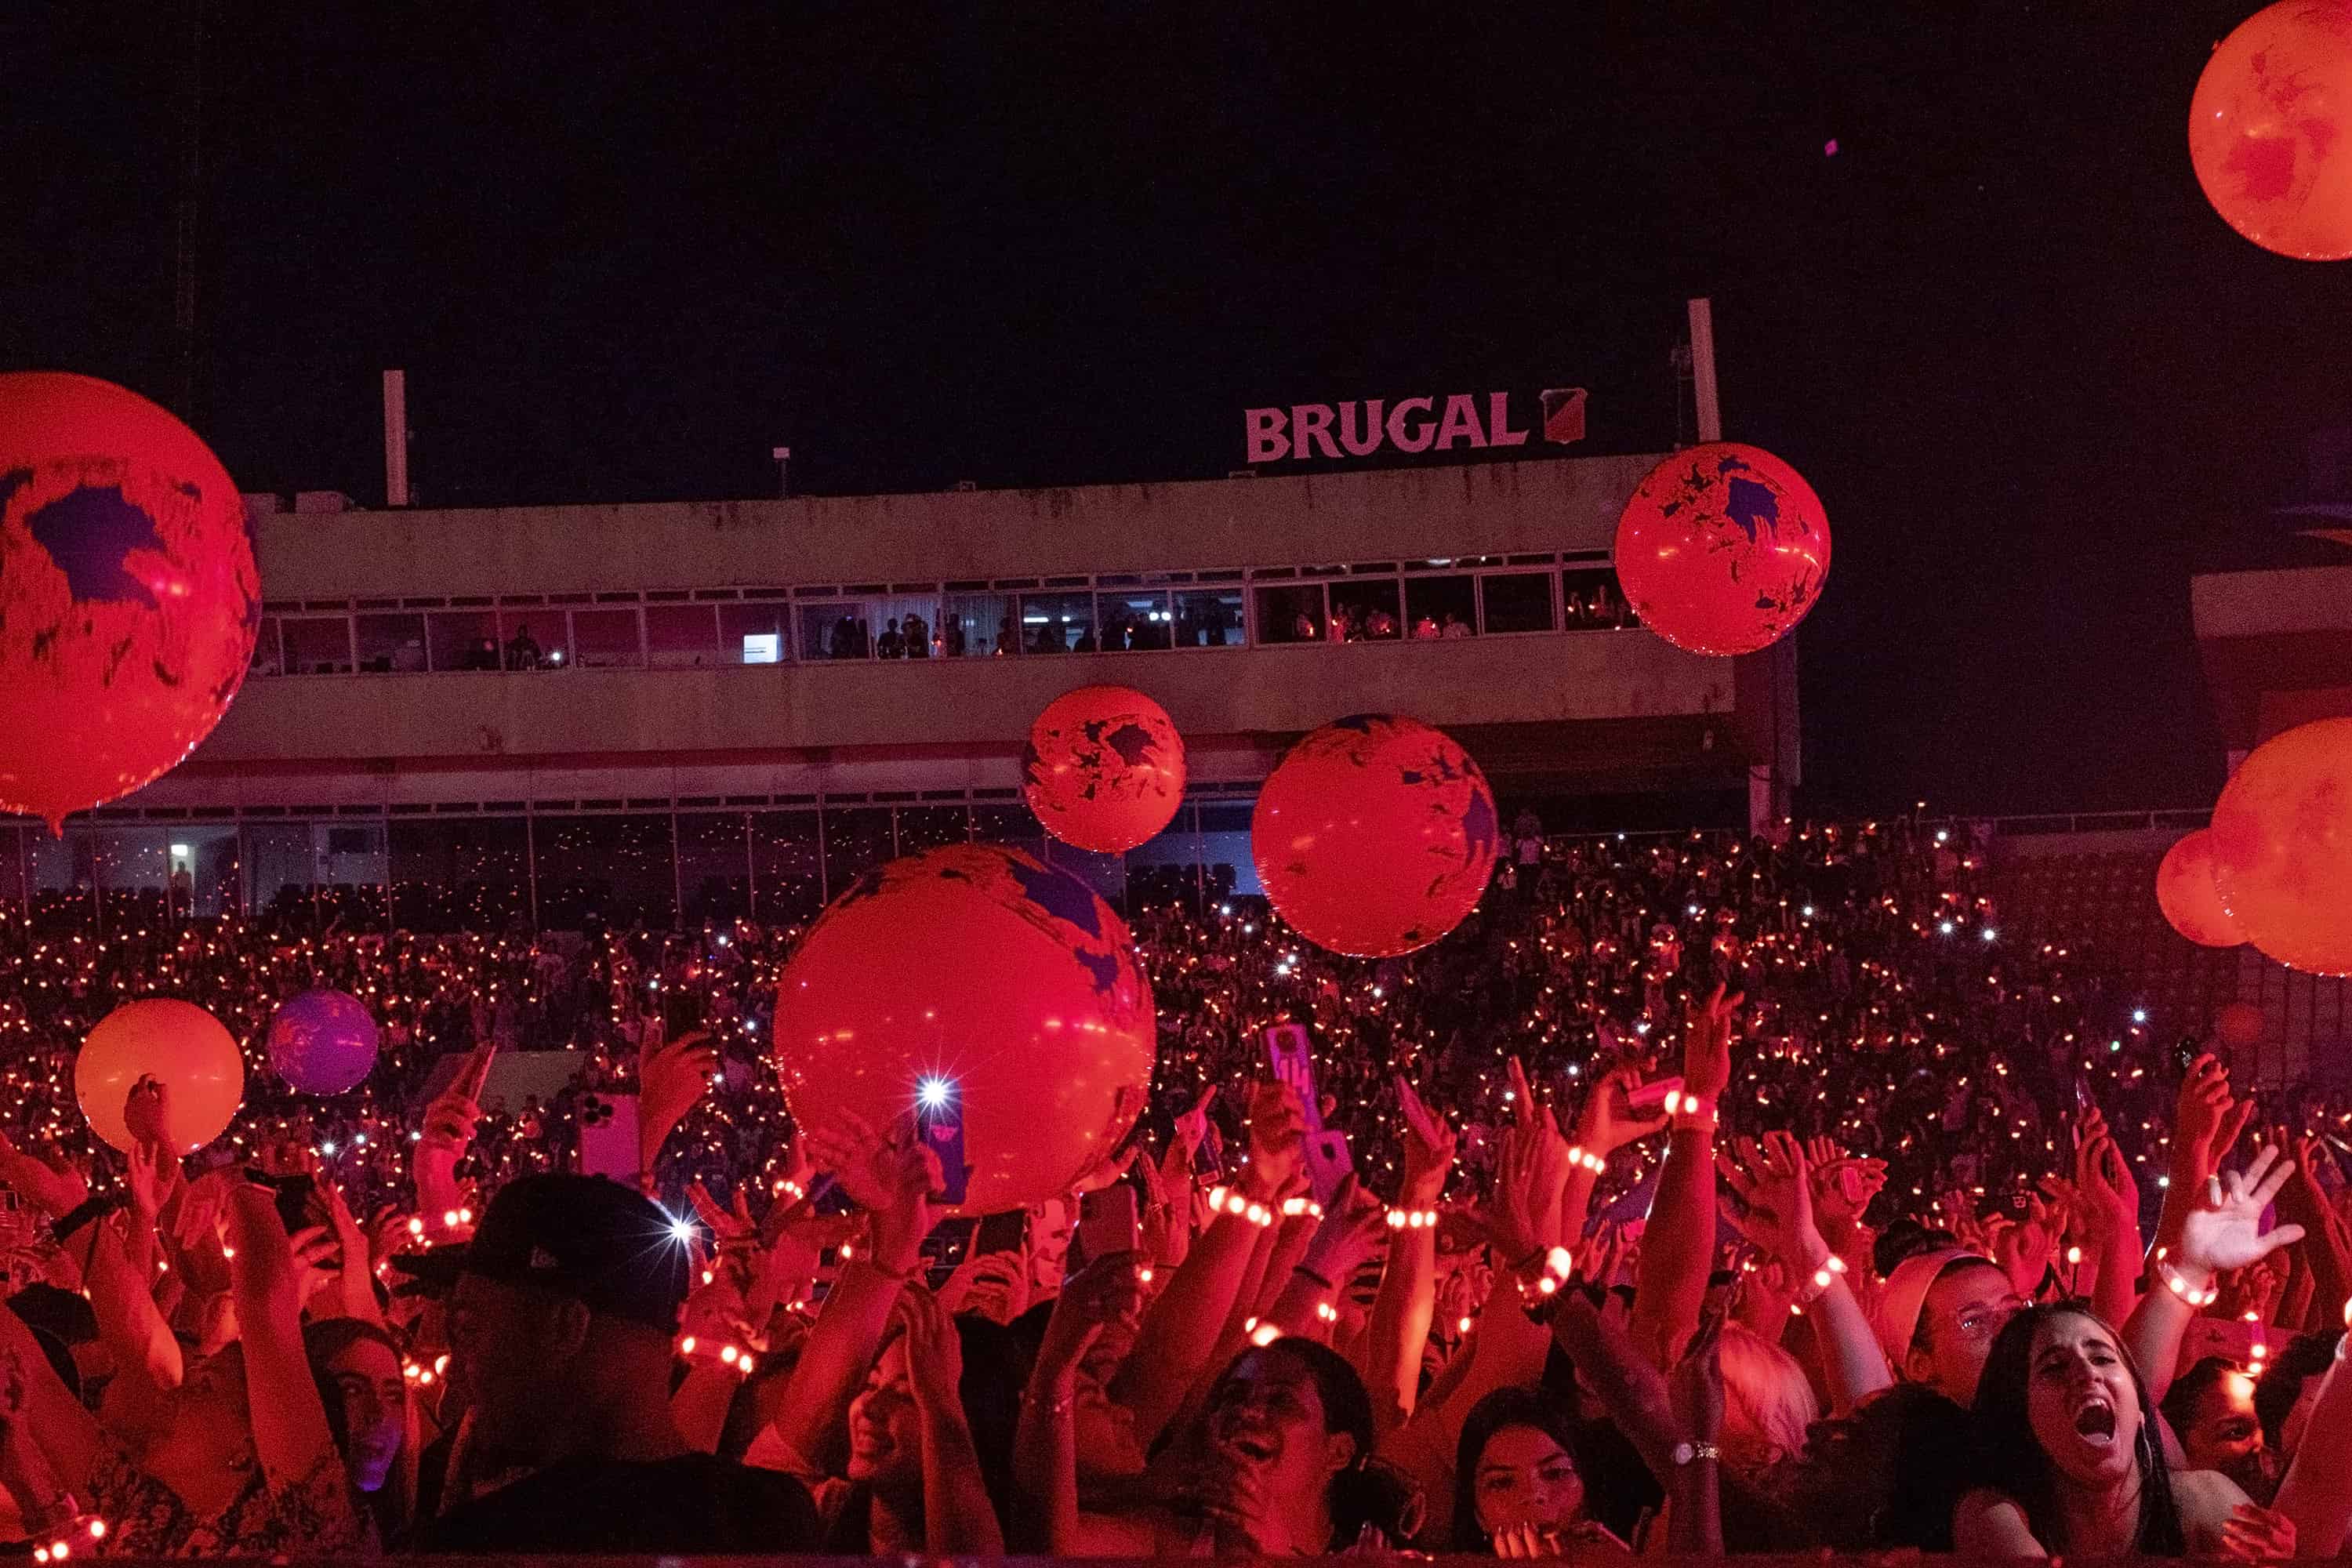 Con globos gigantes de colores los asistentes al concierto participaron activamente del show.